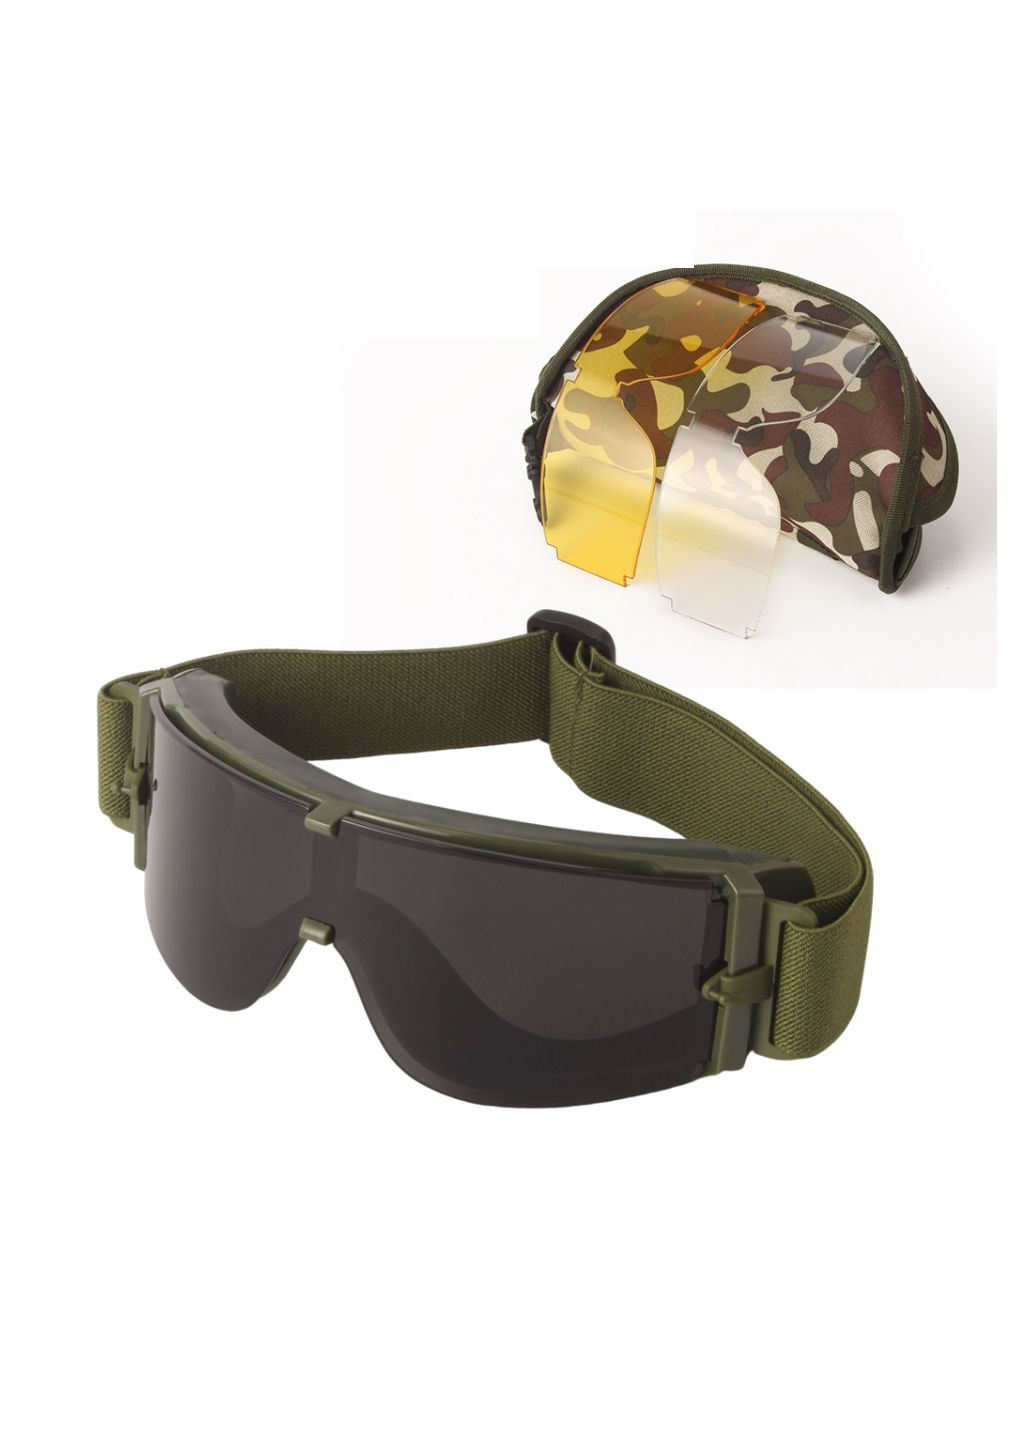 Тактические защитные очки, маска со сменными линзами - Панорамные незапотевающие. Daisy (280826685)